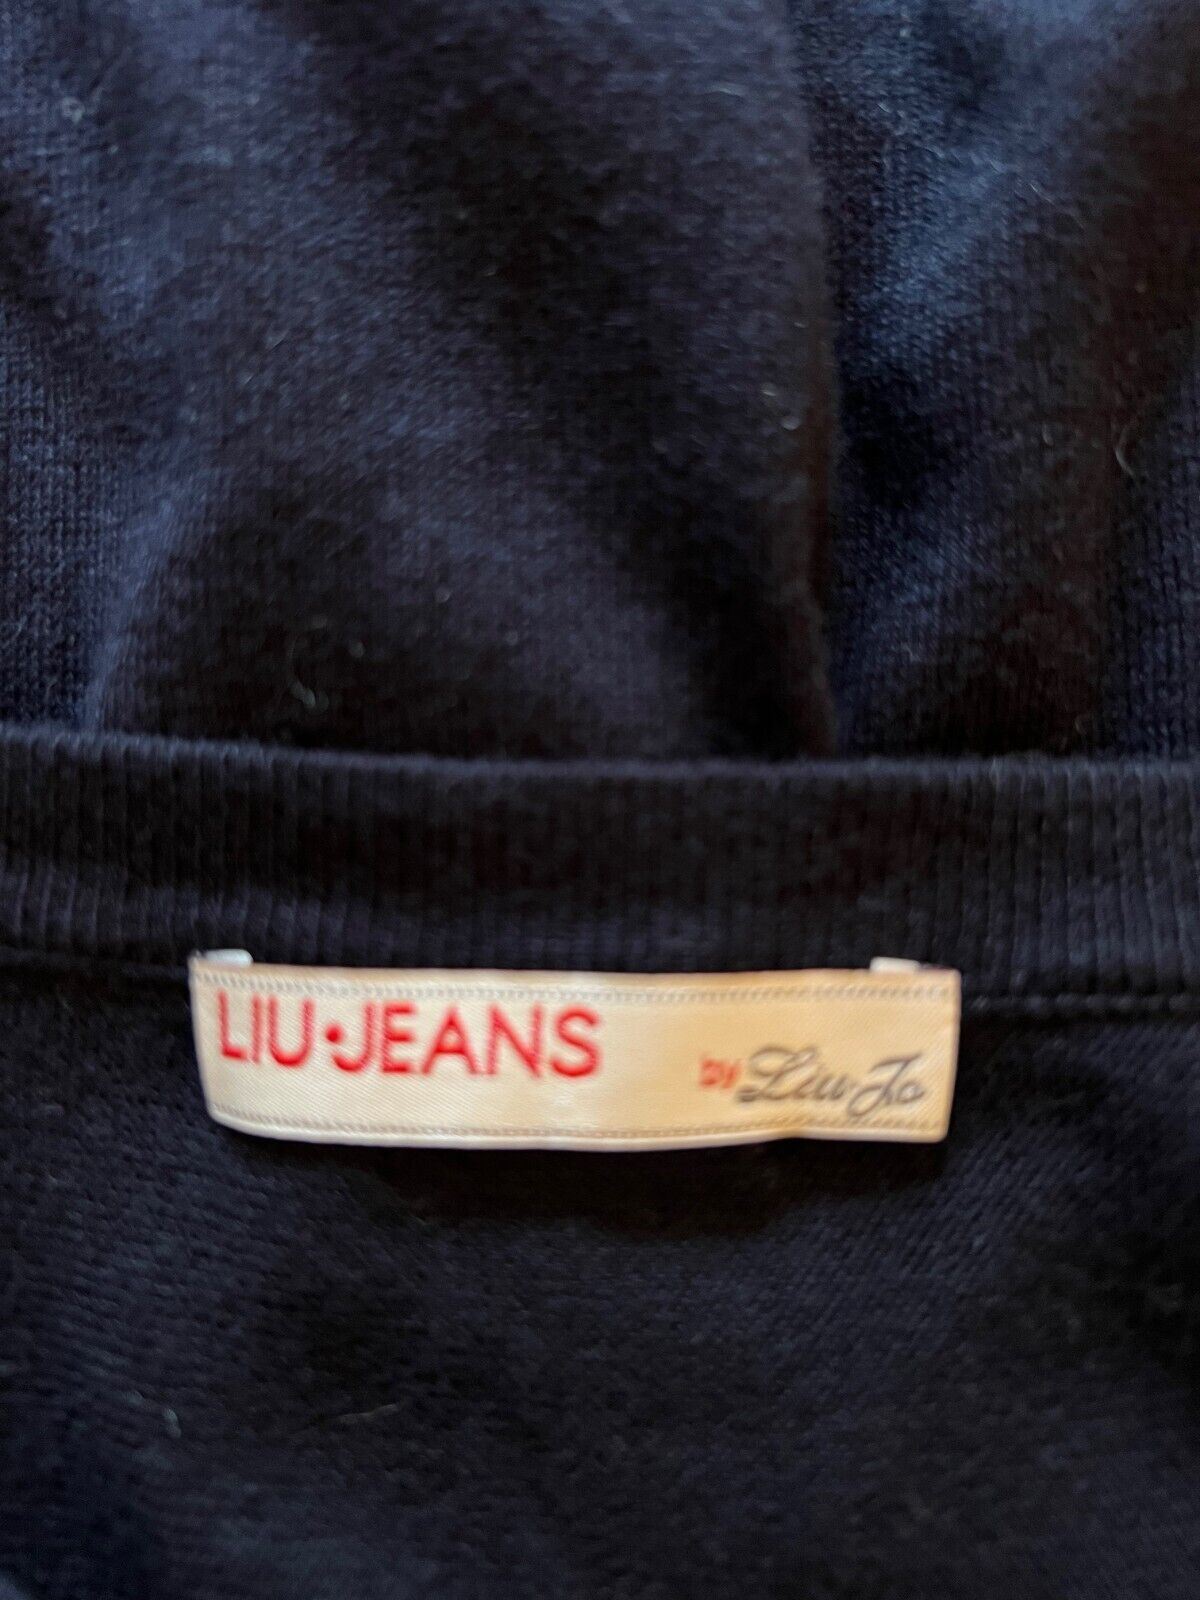 Liu Jo Jeans Navy Fine Knit Cotton Studded Jumper Dress Size S UK 8 US 4 EU 36 Timeless Fashions